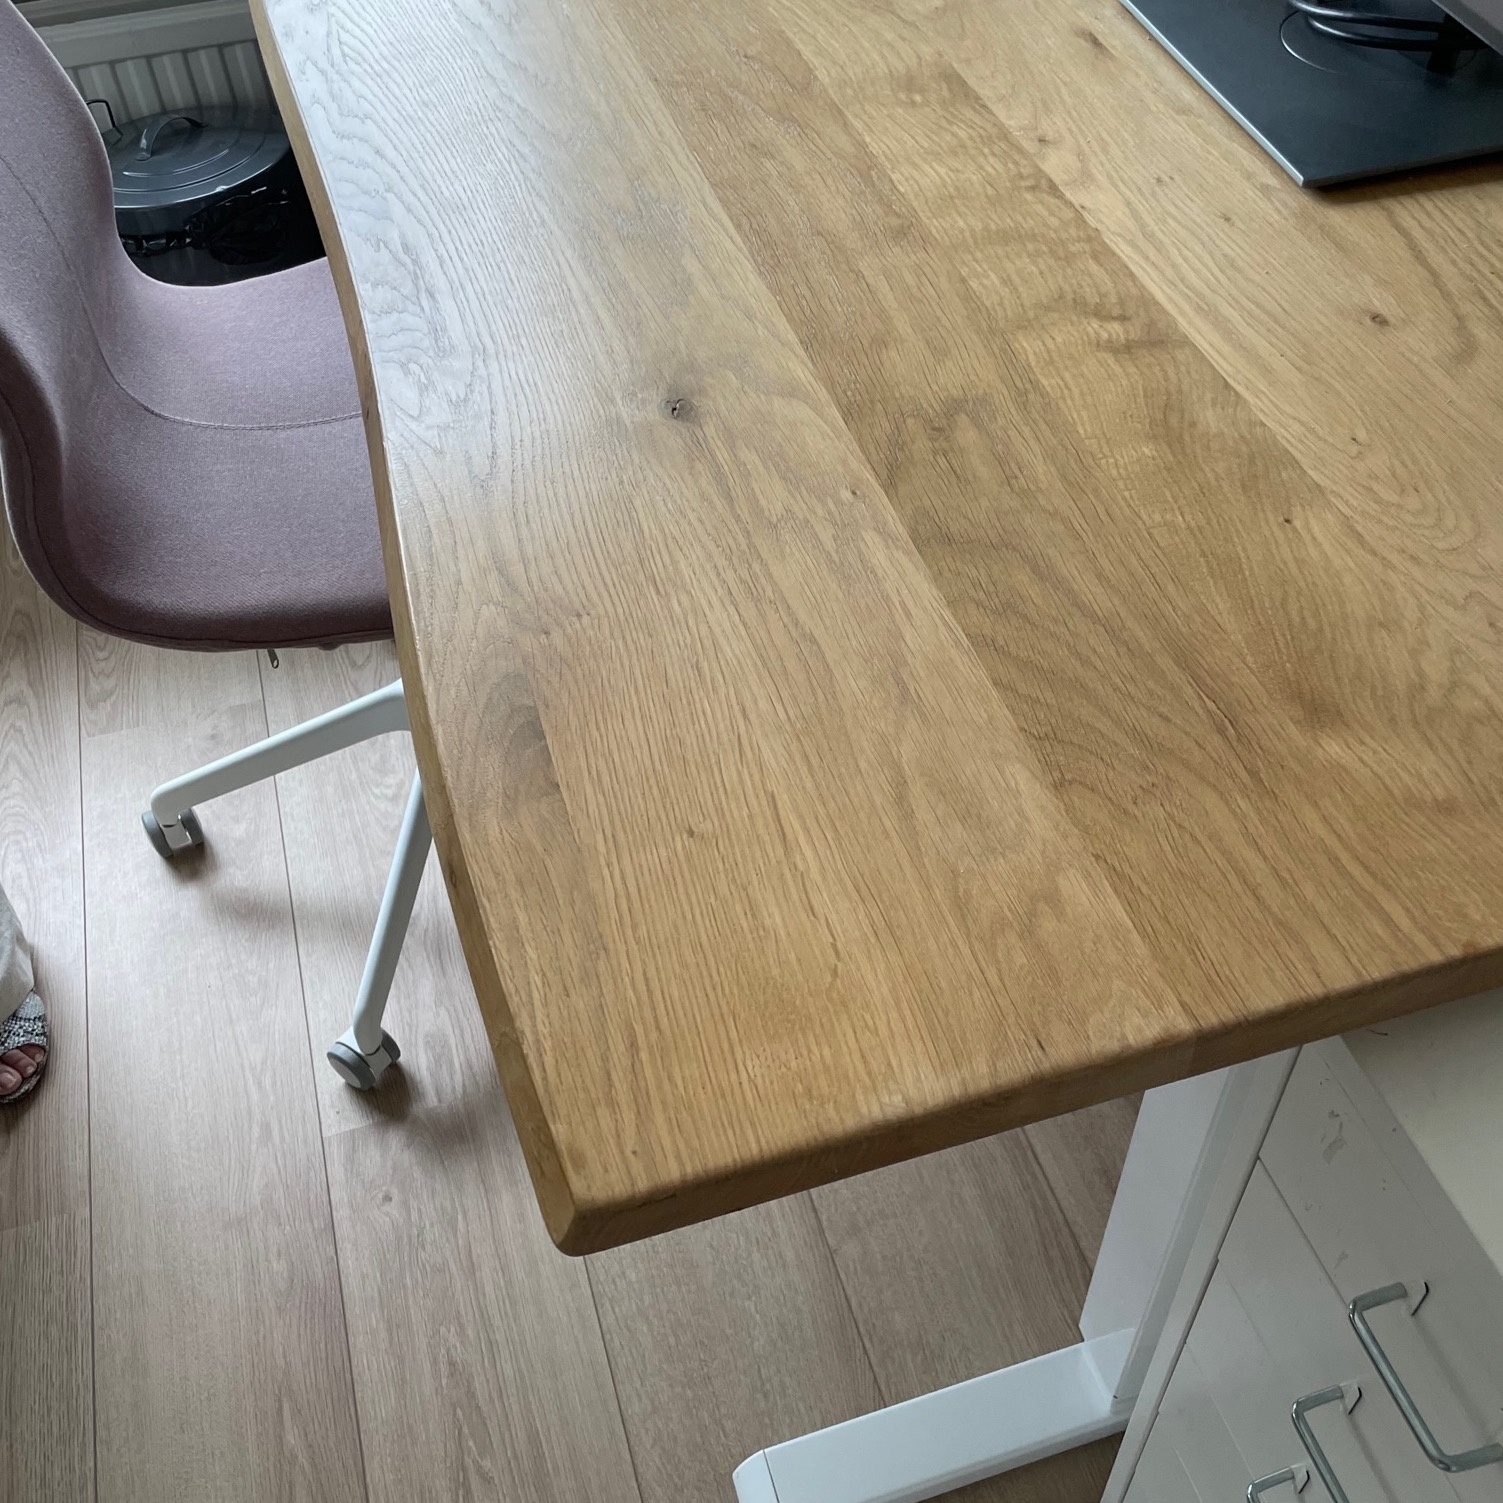  Tischplatte Eiche - mit Baumkante (Optik) - nach Maß - 3 cm dick - Eichenholz rustikal - Eiche Tischplatte massiv mit natürlichen Baumkant - verleimt & künstlich getrocknet (HF 8-12%) - 50-120x50-350 cm